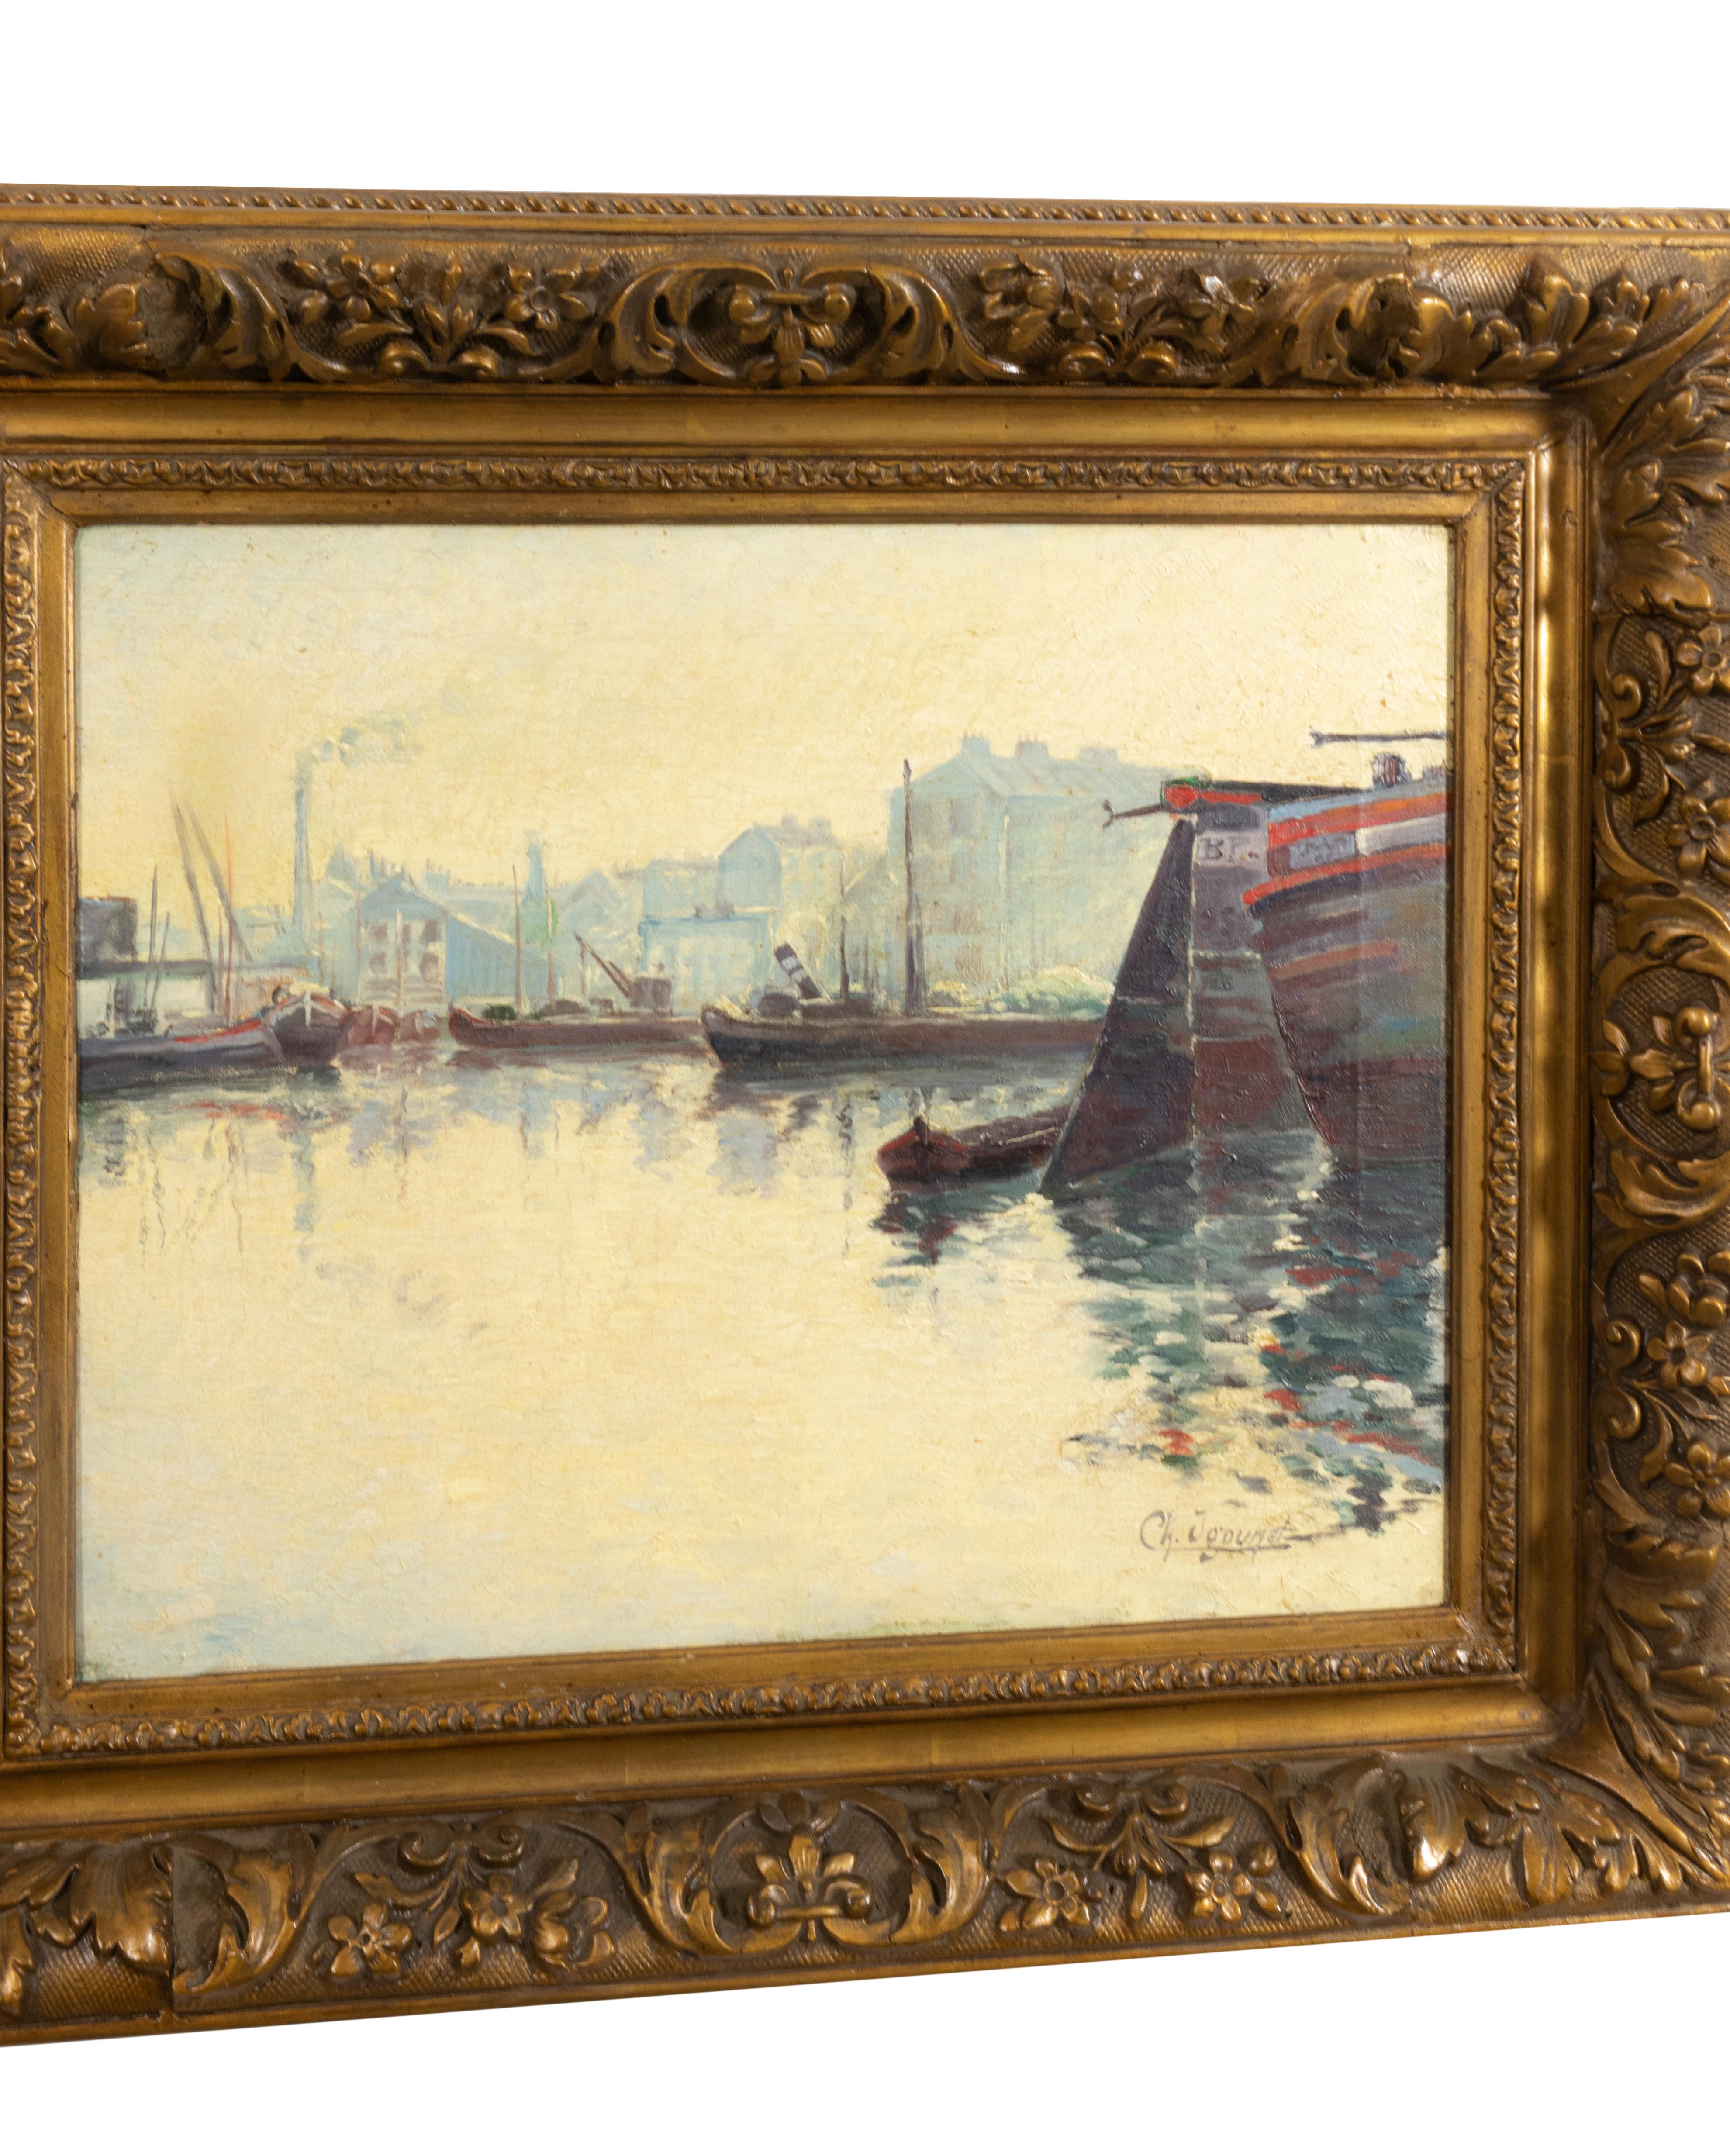 Ein exquisites Gemälde des französischen Impressionismus mit einem nautischen Thema und düsteren Booten am Pier - eine ruhige Seelandschaft mit der Signatur 